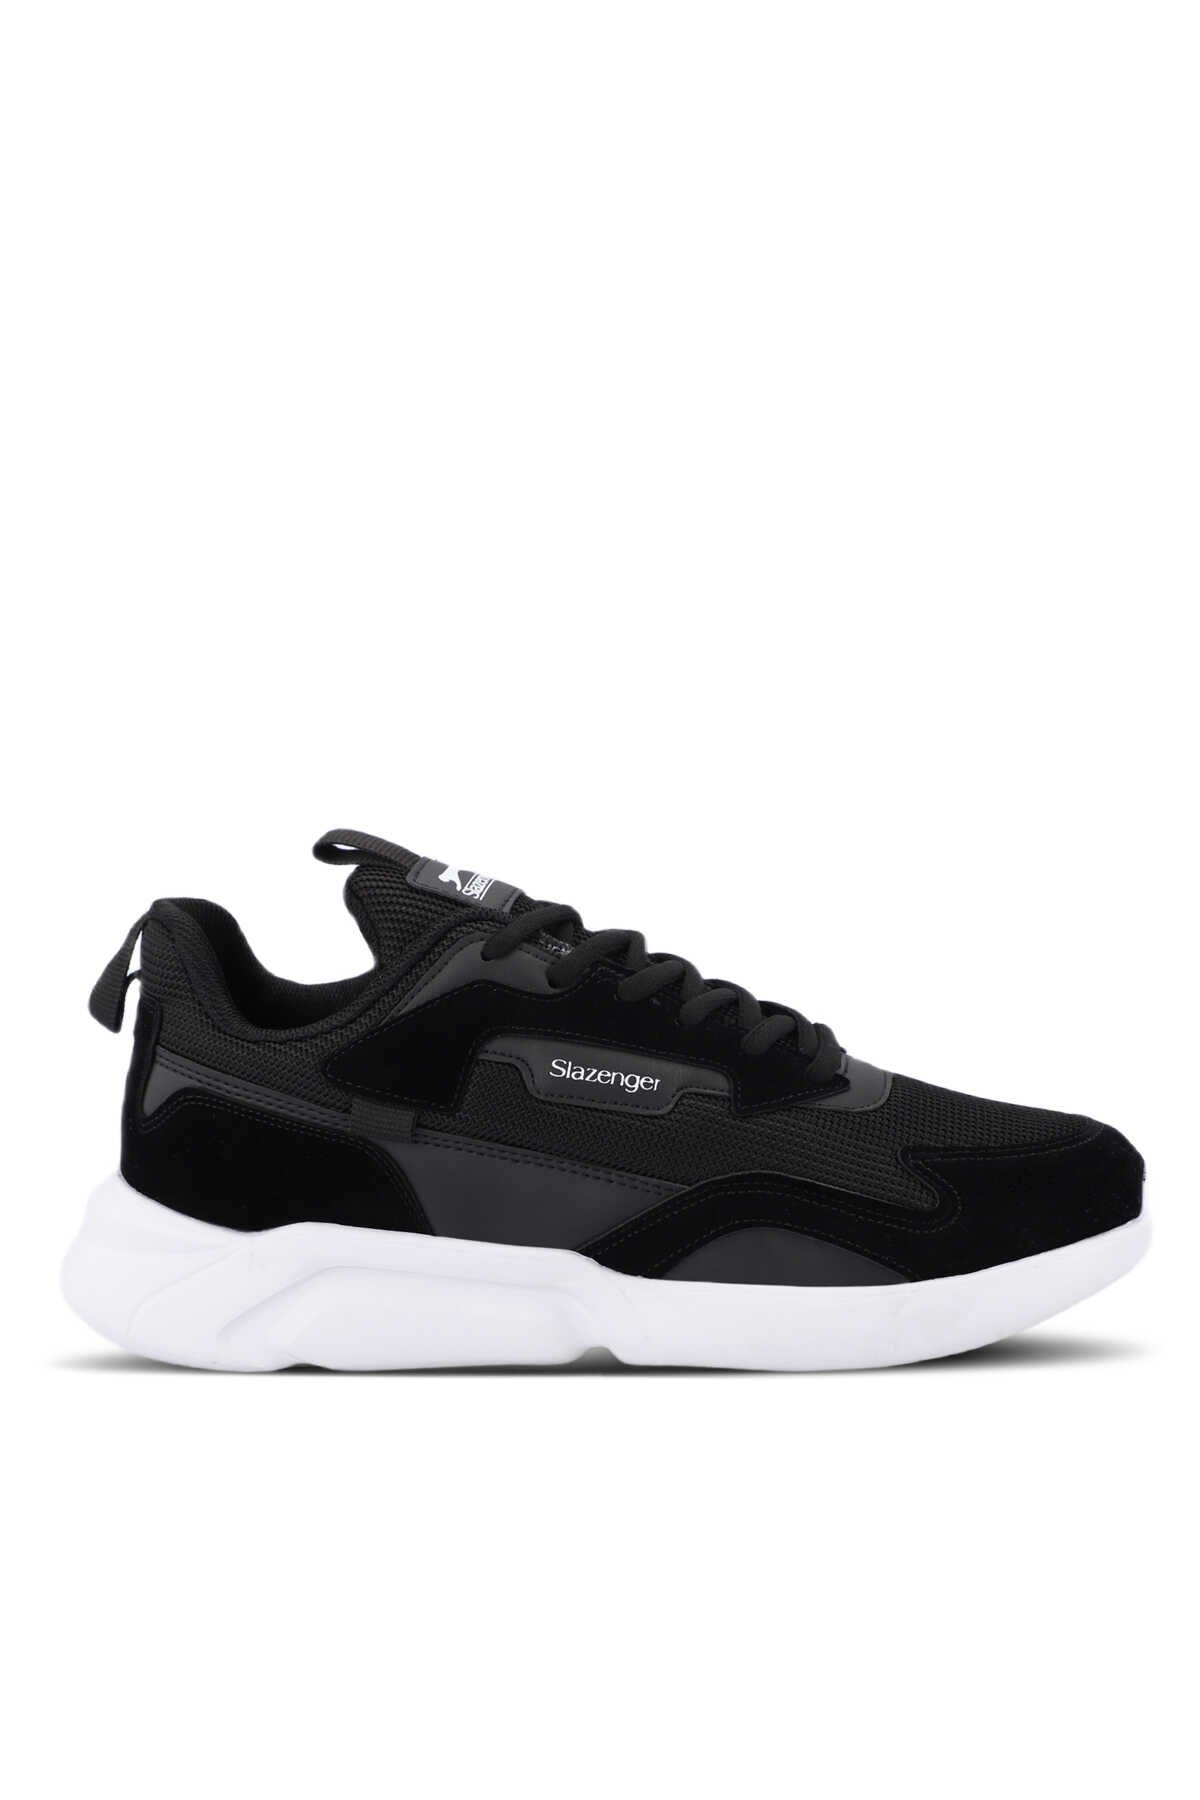 Slazenger - OPTION Sneaker Erkek Ayakkabı Siyah / Beyaz